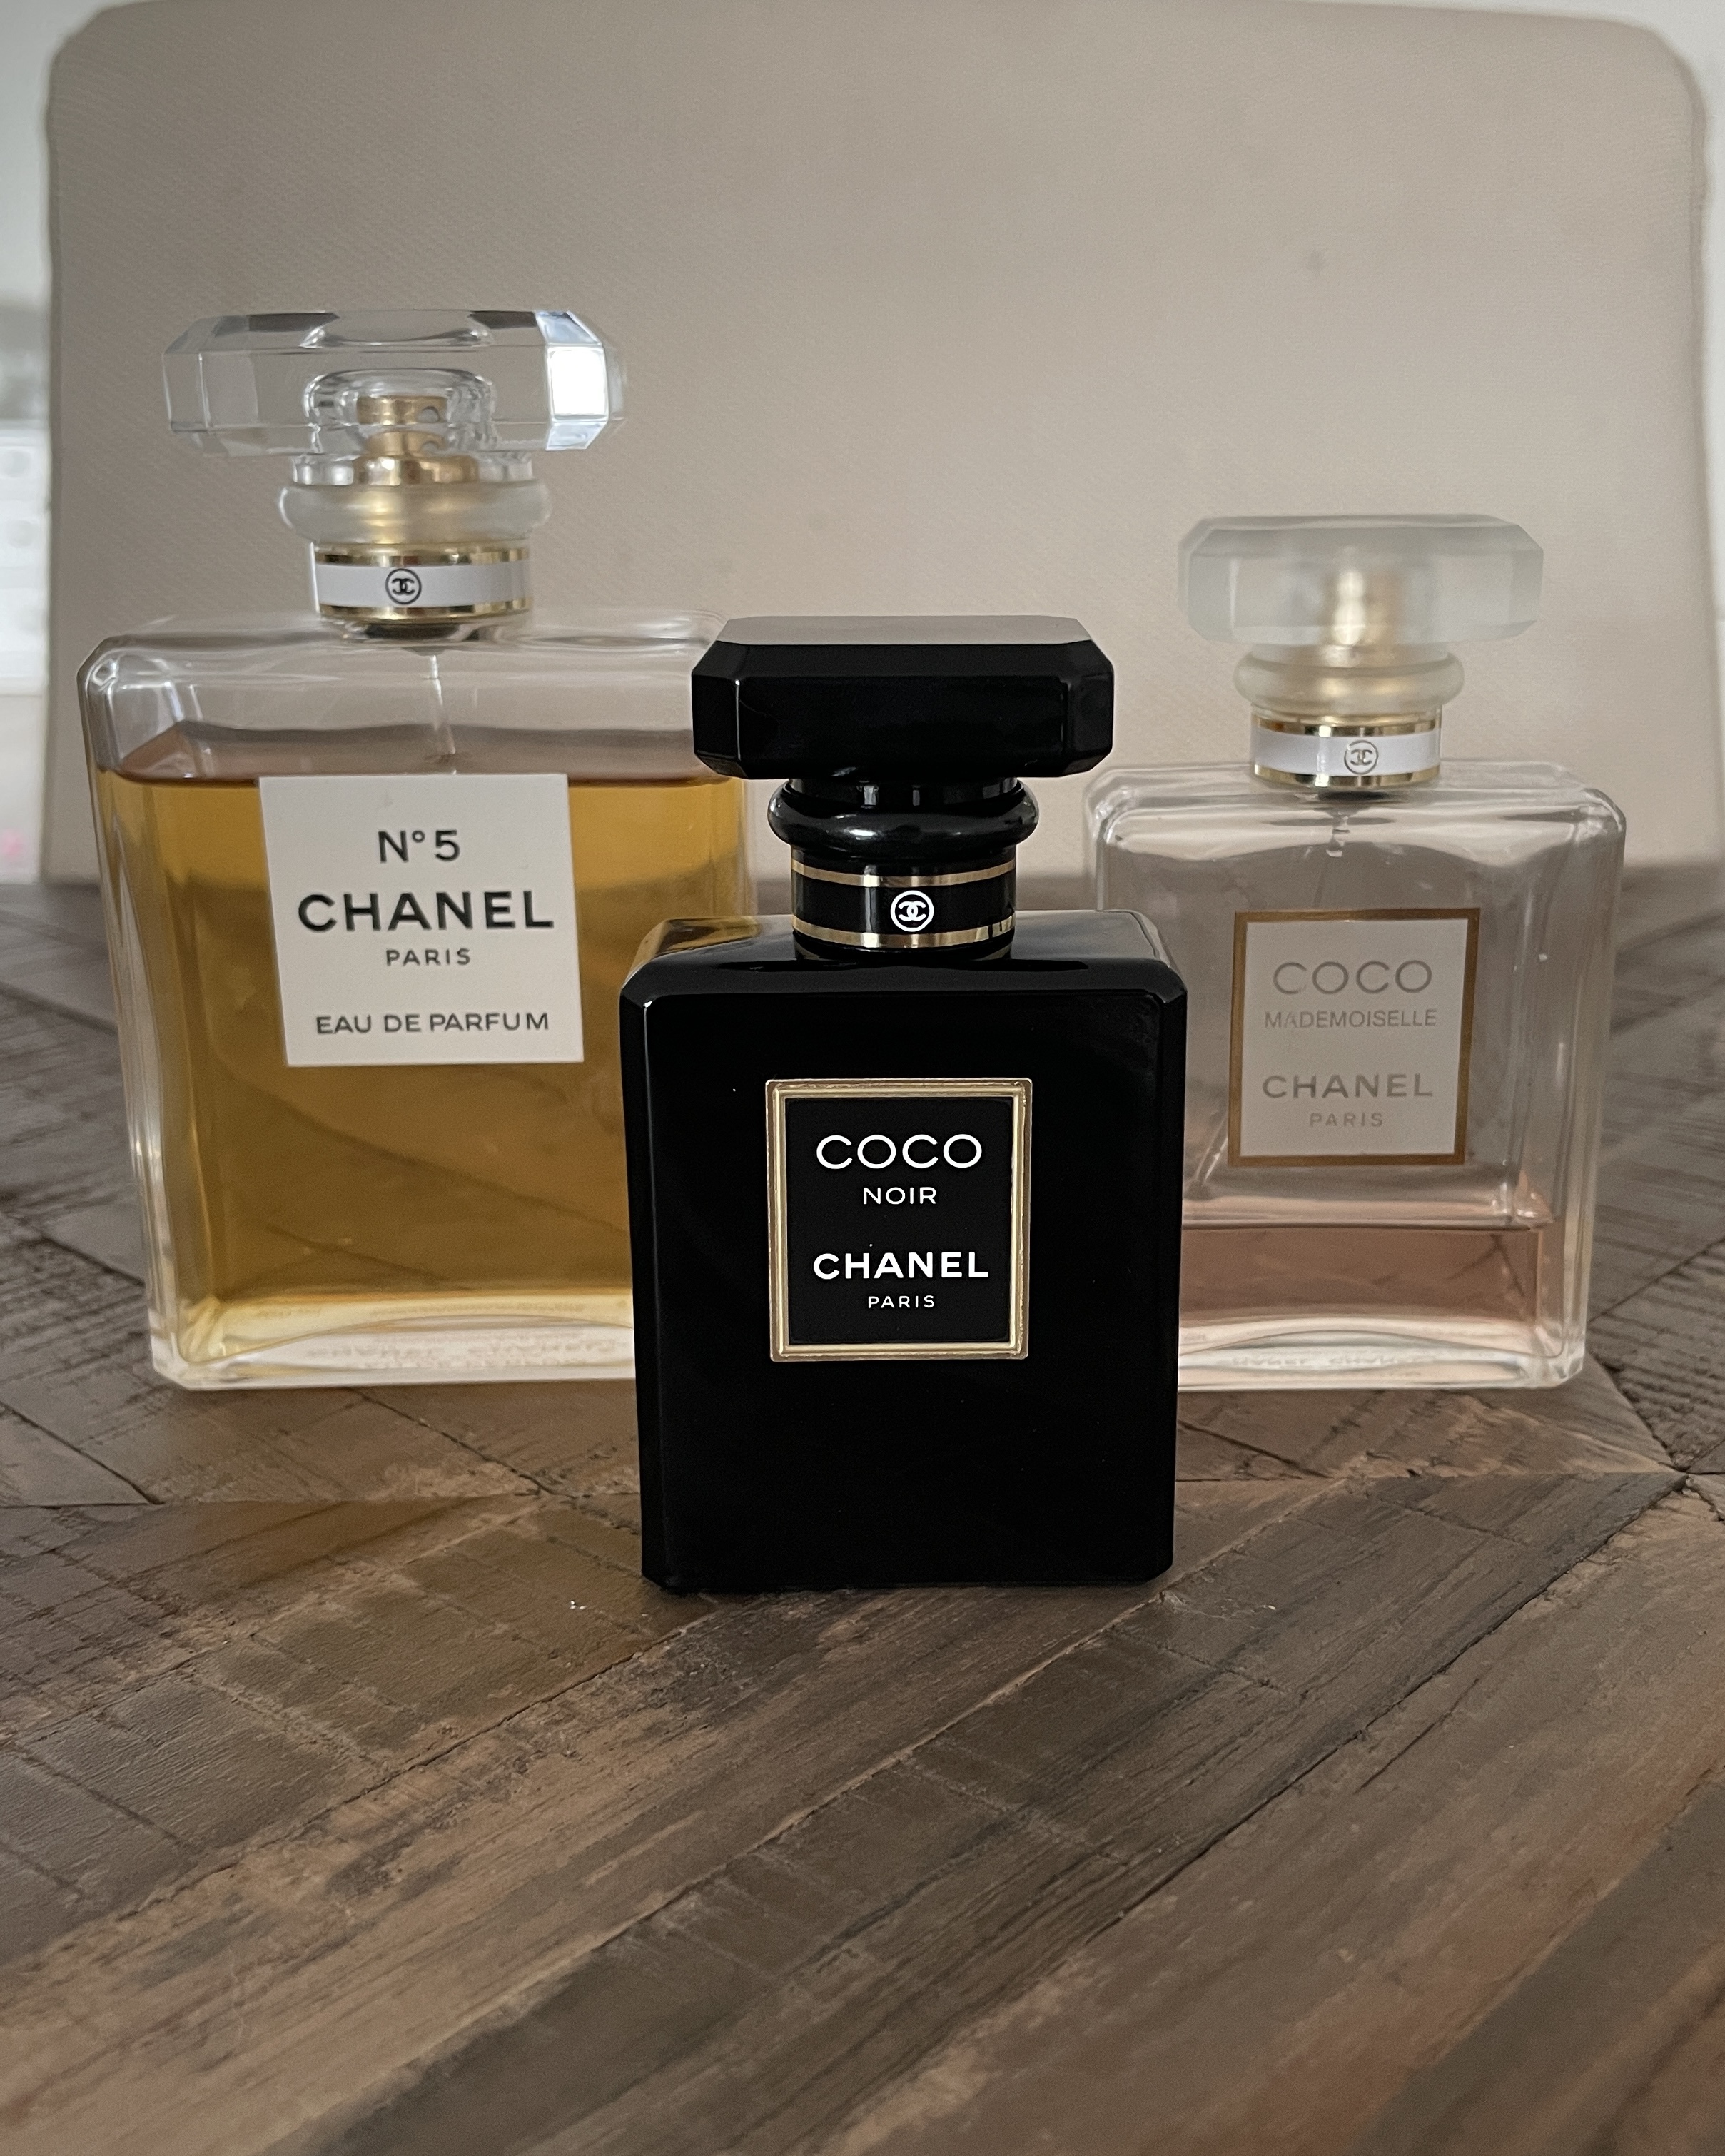 Chanel Coco Handle Bag  Bragmybag